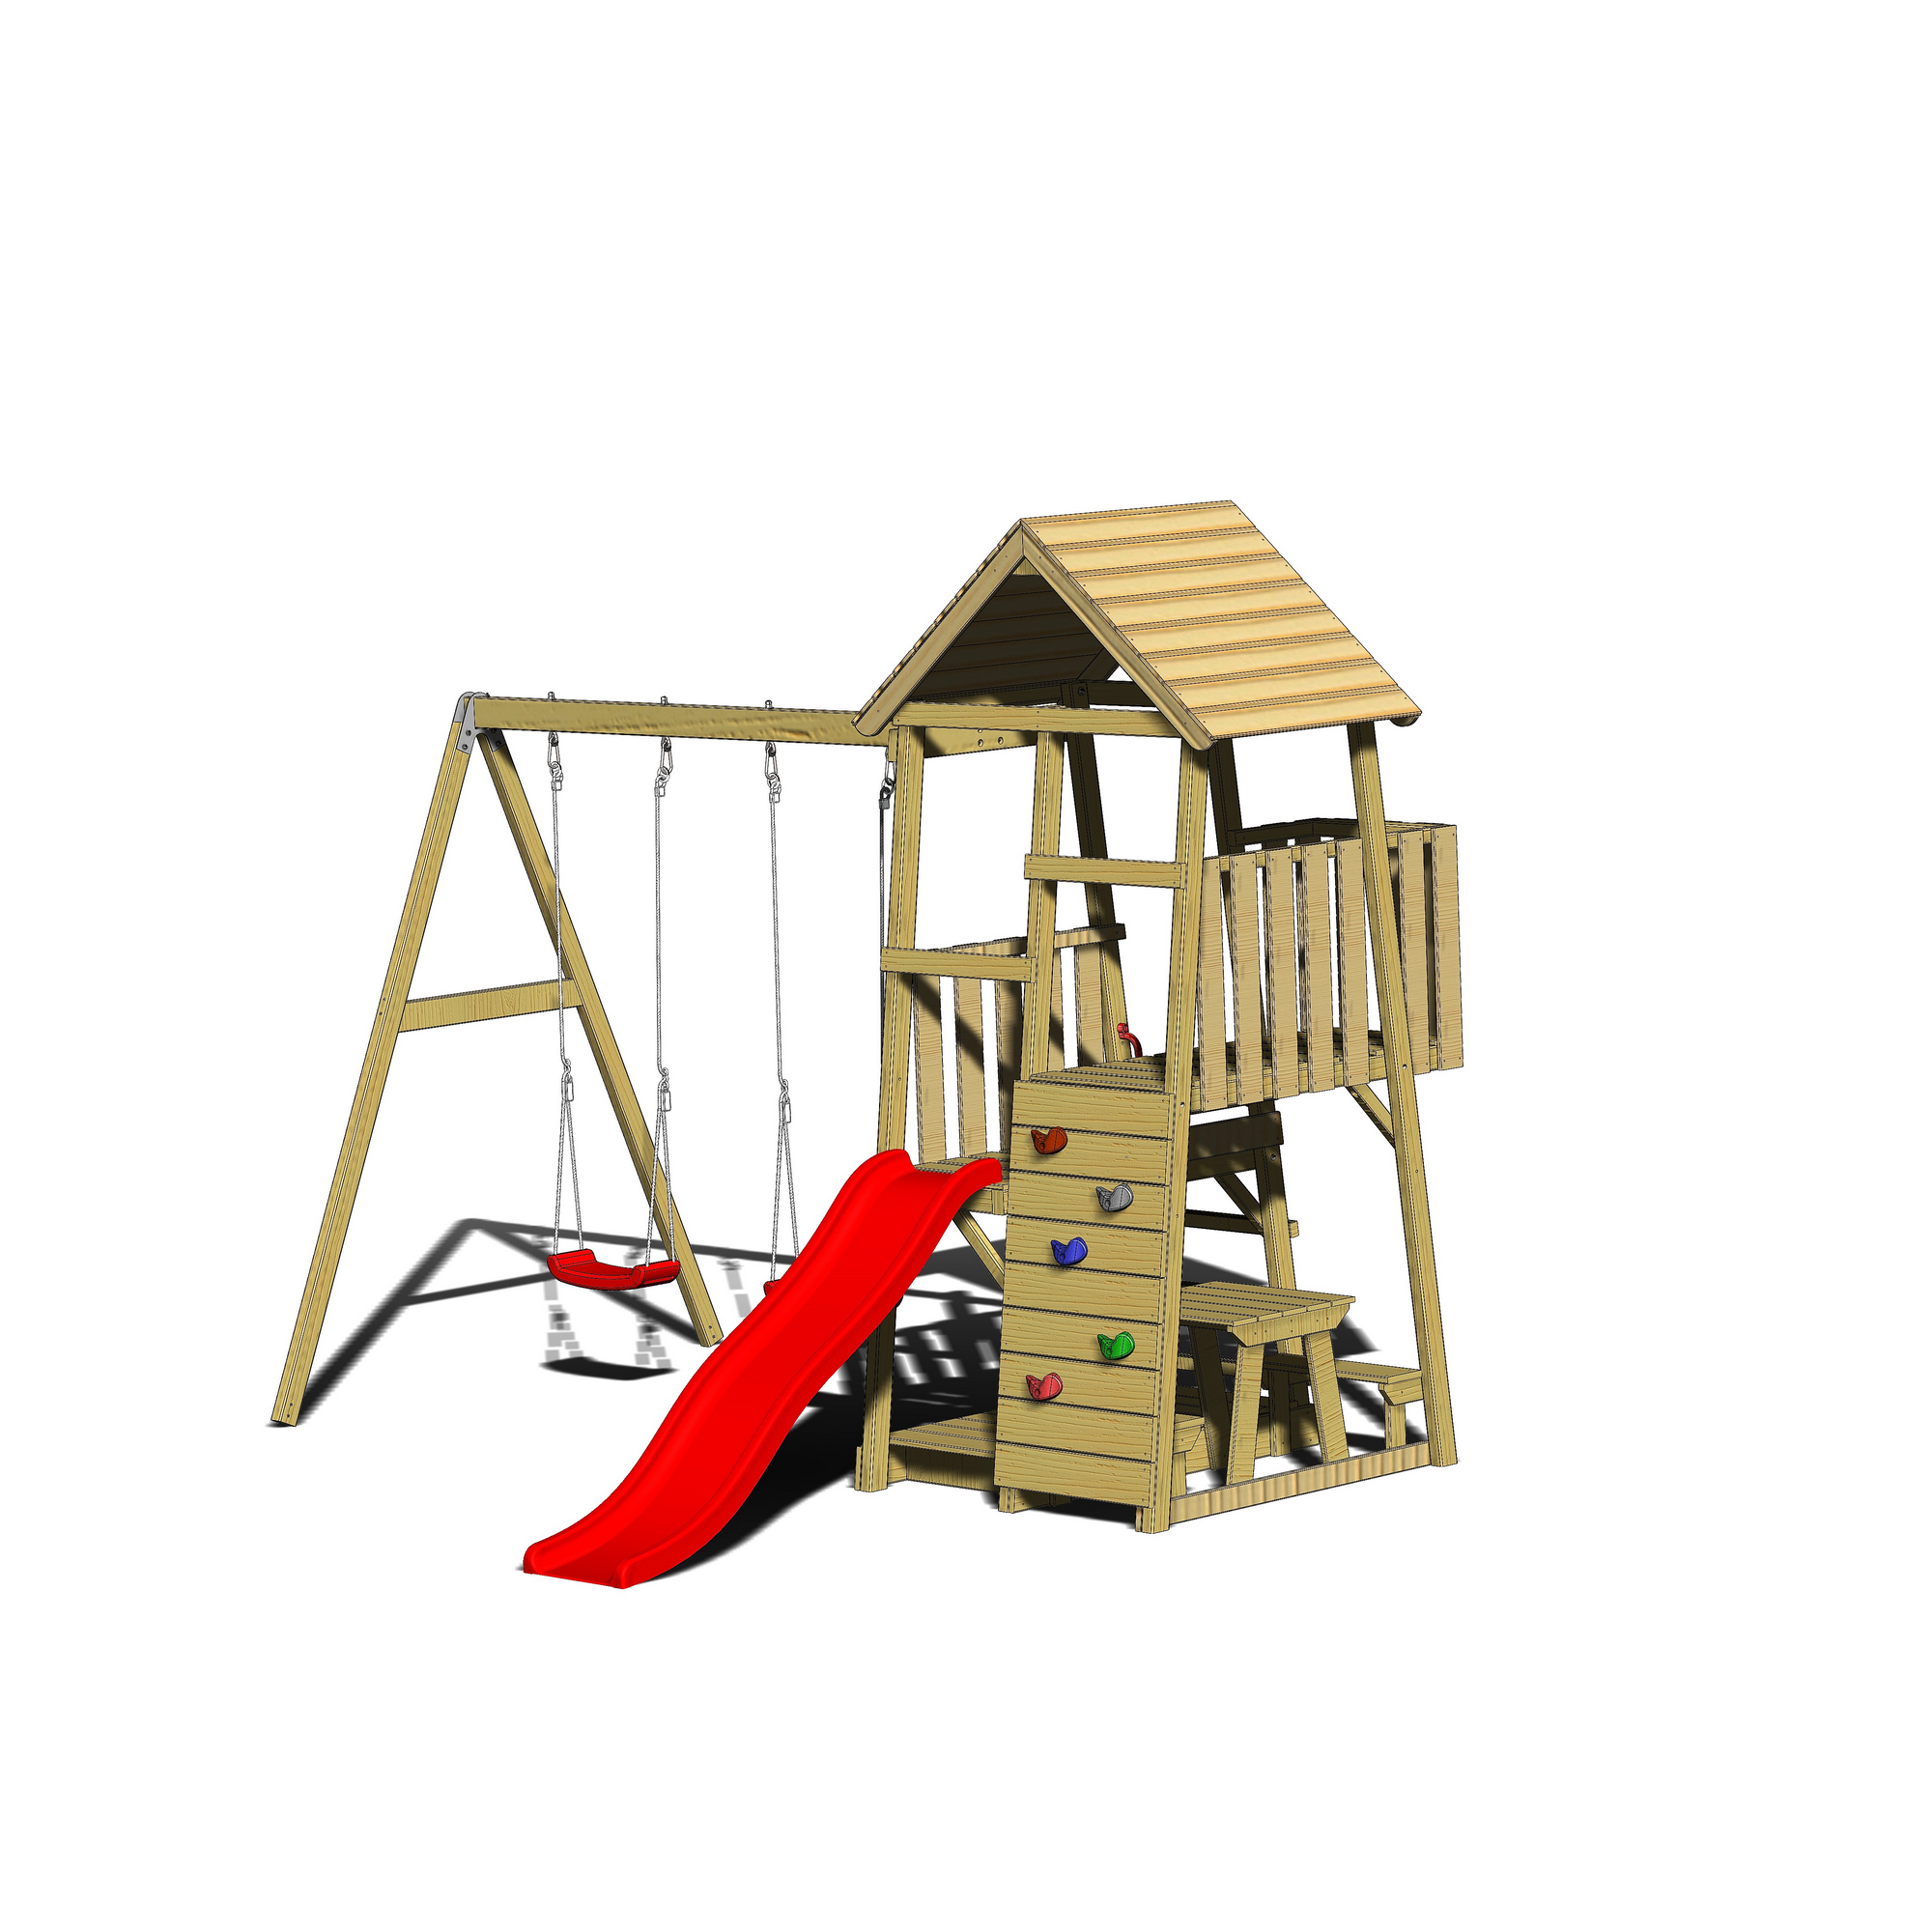 Holz-Spielturm 'Flamingo' natur Rutsche, Kletterwand, 2 Schaukeln und Picknicktisch 280 x 340 x 270 cm + product picture